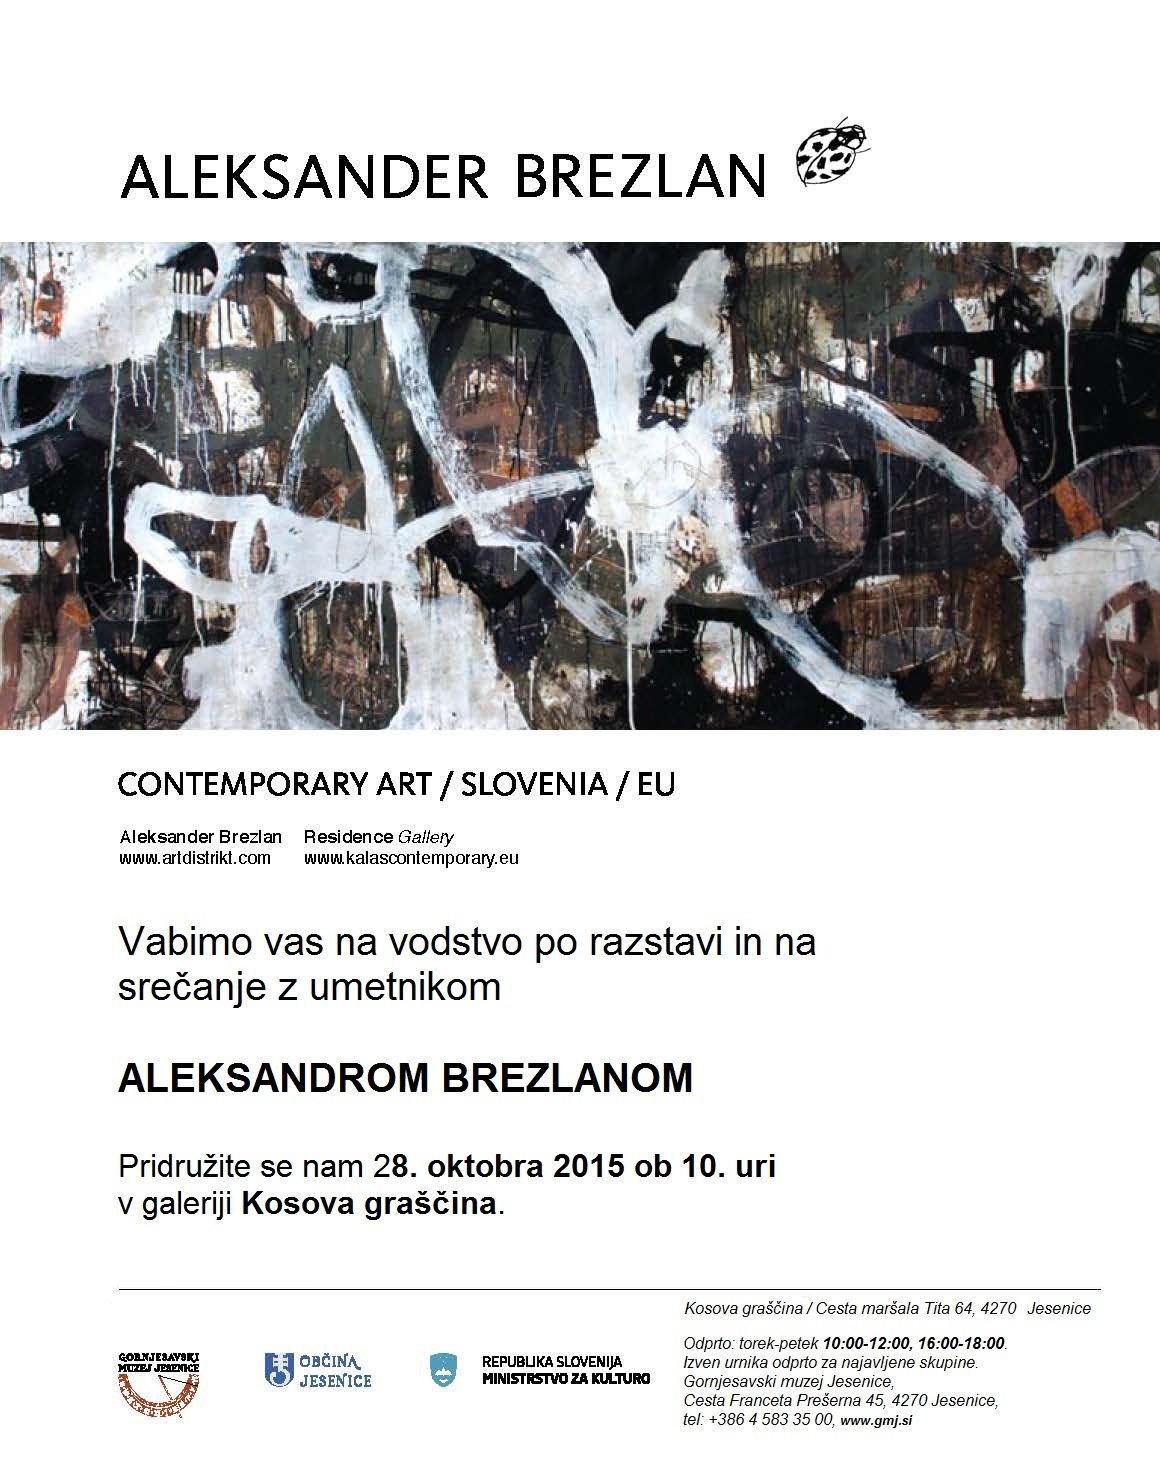 Aleksander Brezlan, Aljaž Pogačnik, Kosova graščina, Jesenice, Art, Gornjesavski muzej, Upper Sava vally museum